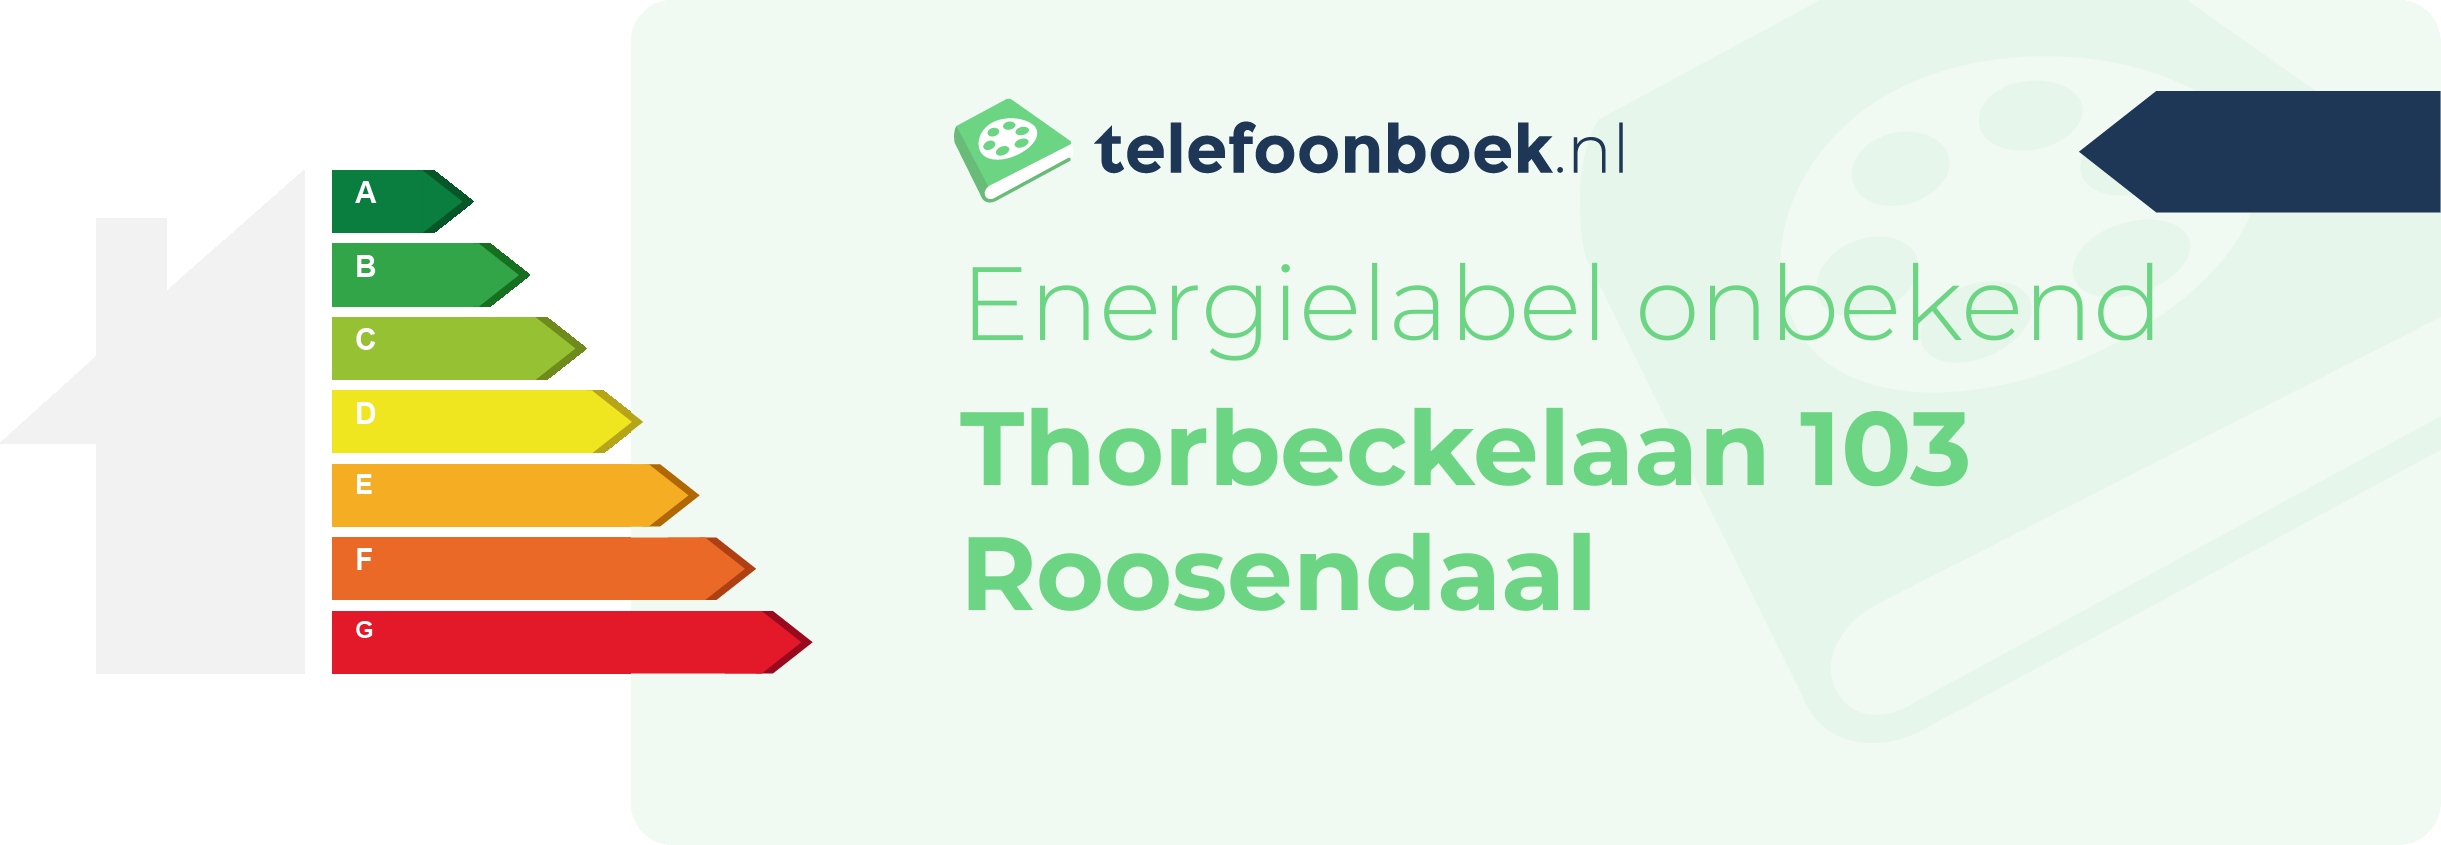 Energielabel Thorbeckelaan 103 Roosendaal